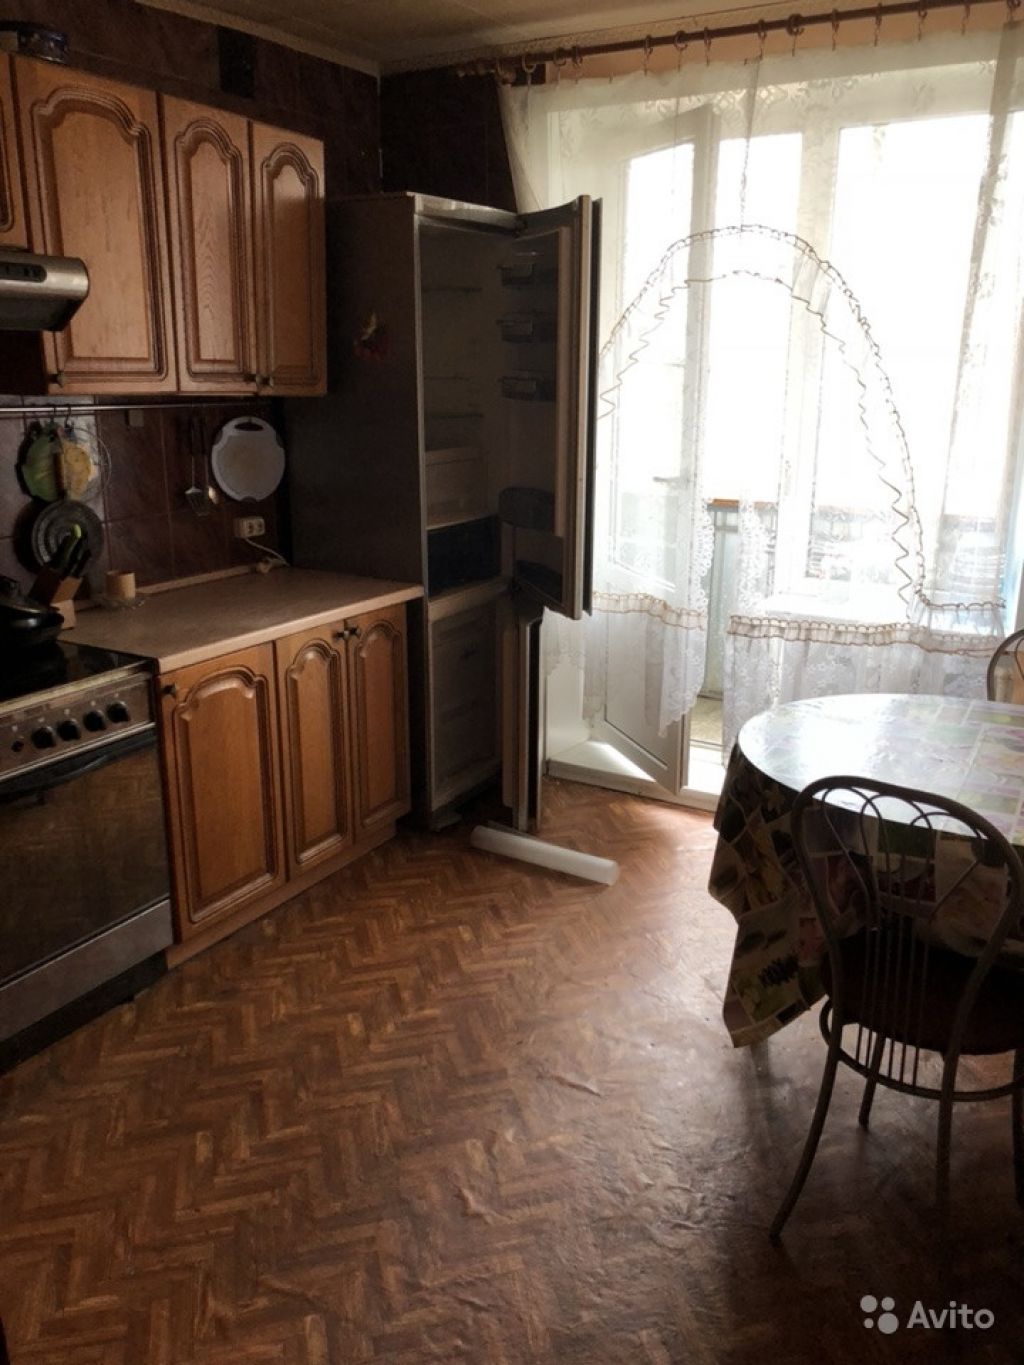 Сдам квартиру 2-к квартира 64 м² на 12 этаже 12-этажного панельного дома в Москве. Фото 1